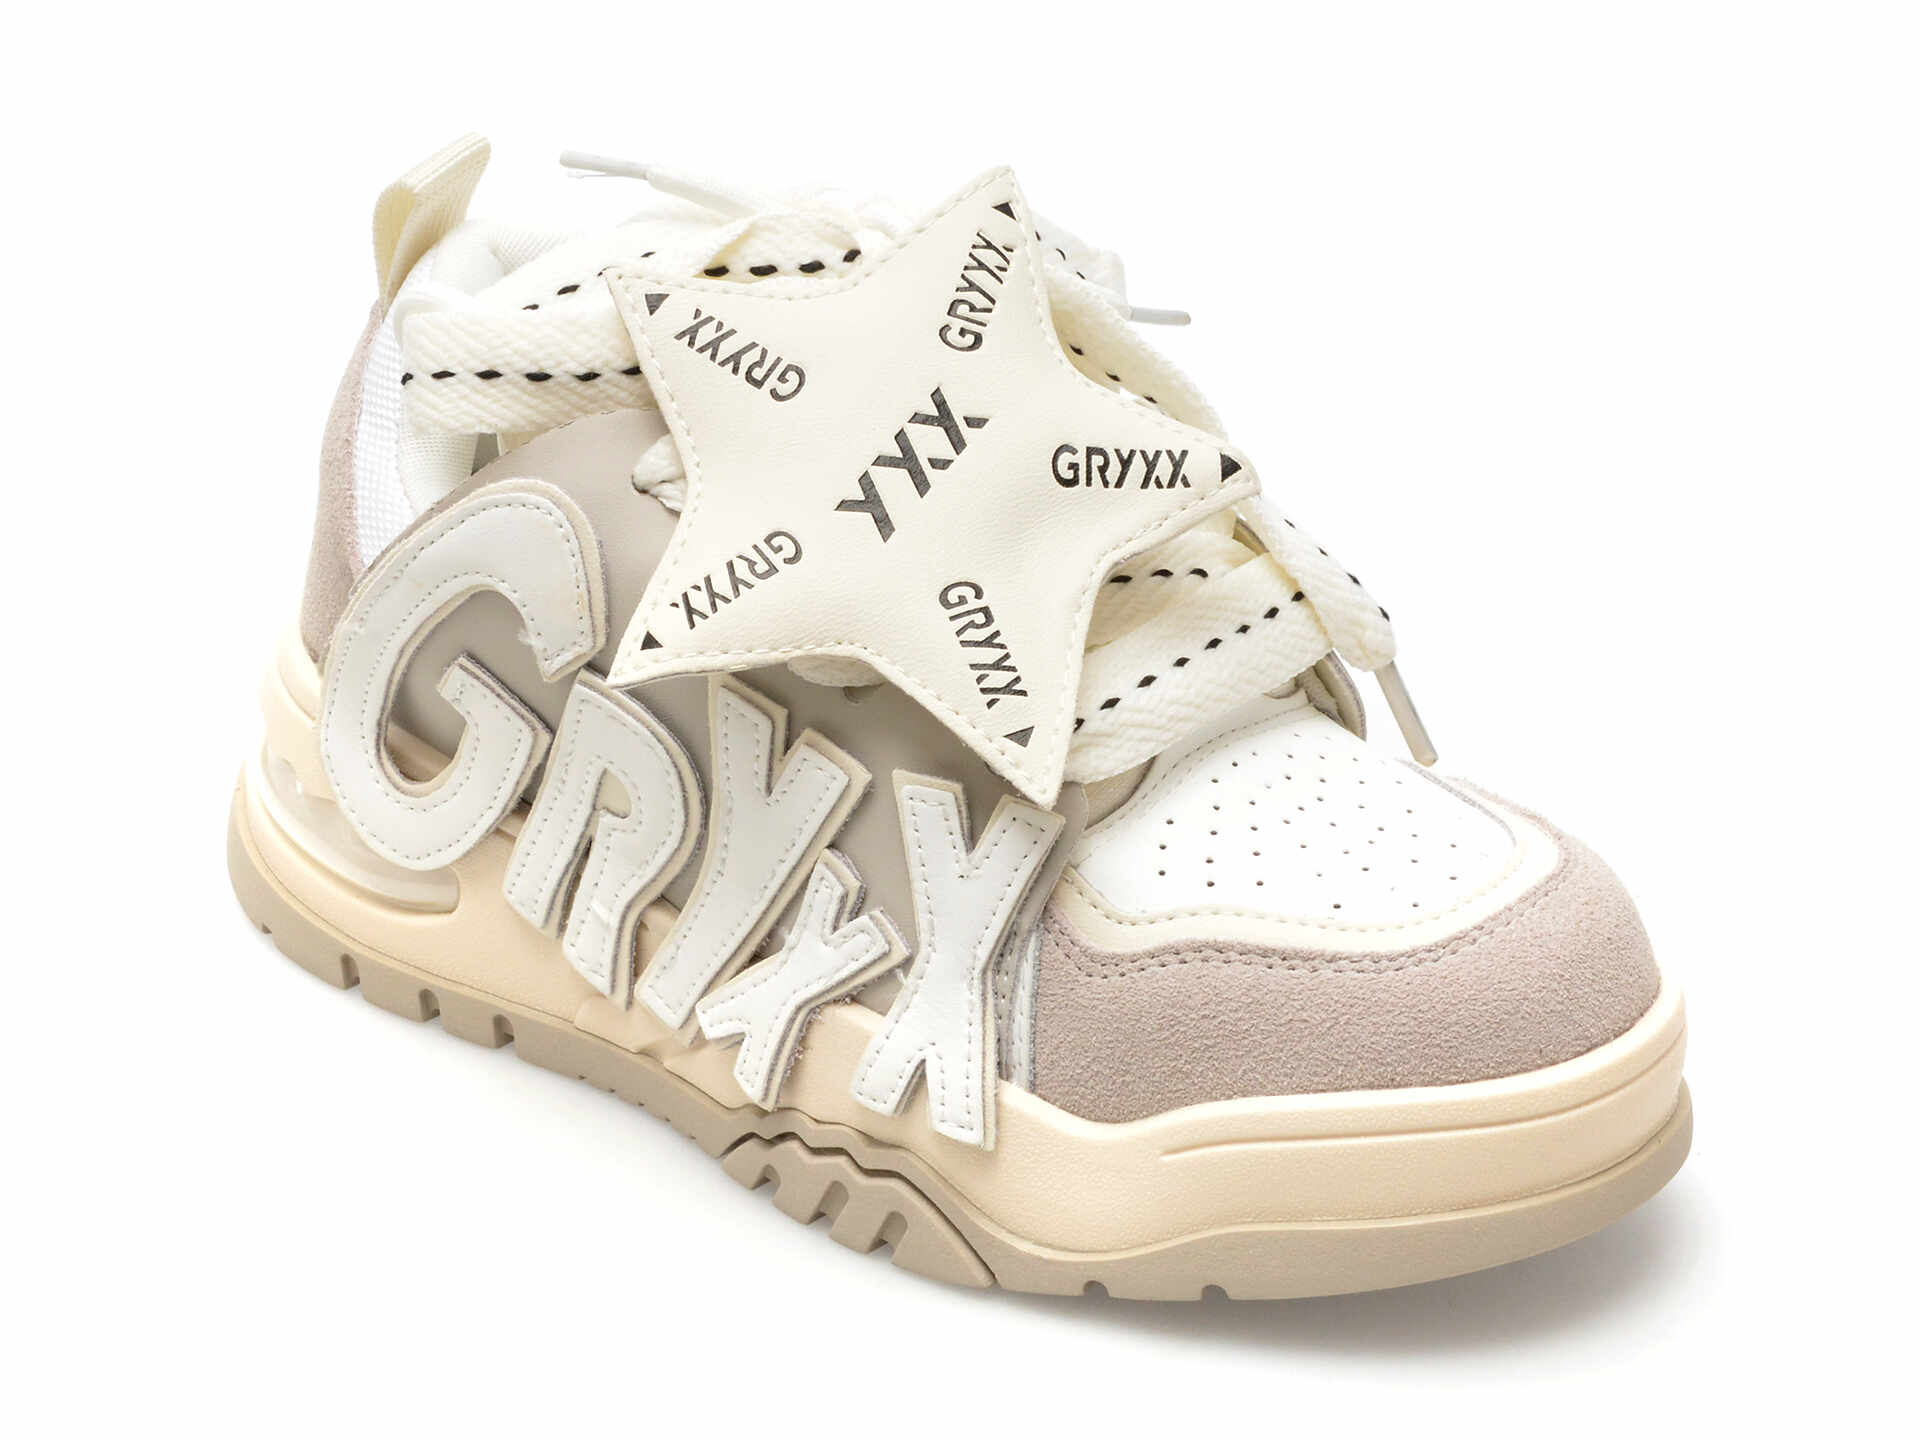 Pantofi GRYXX albi, 19616, din piele naturala